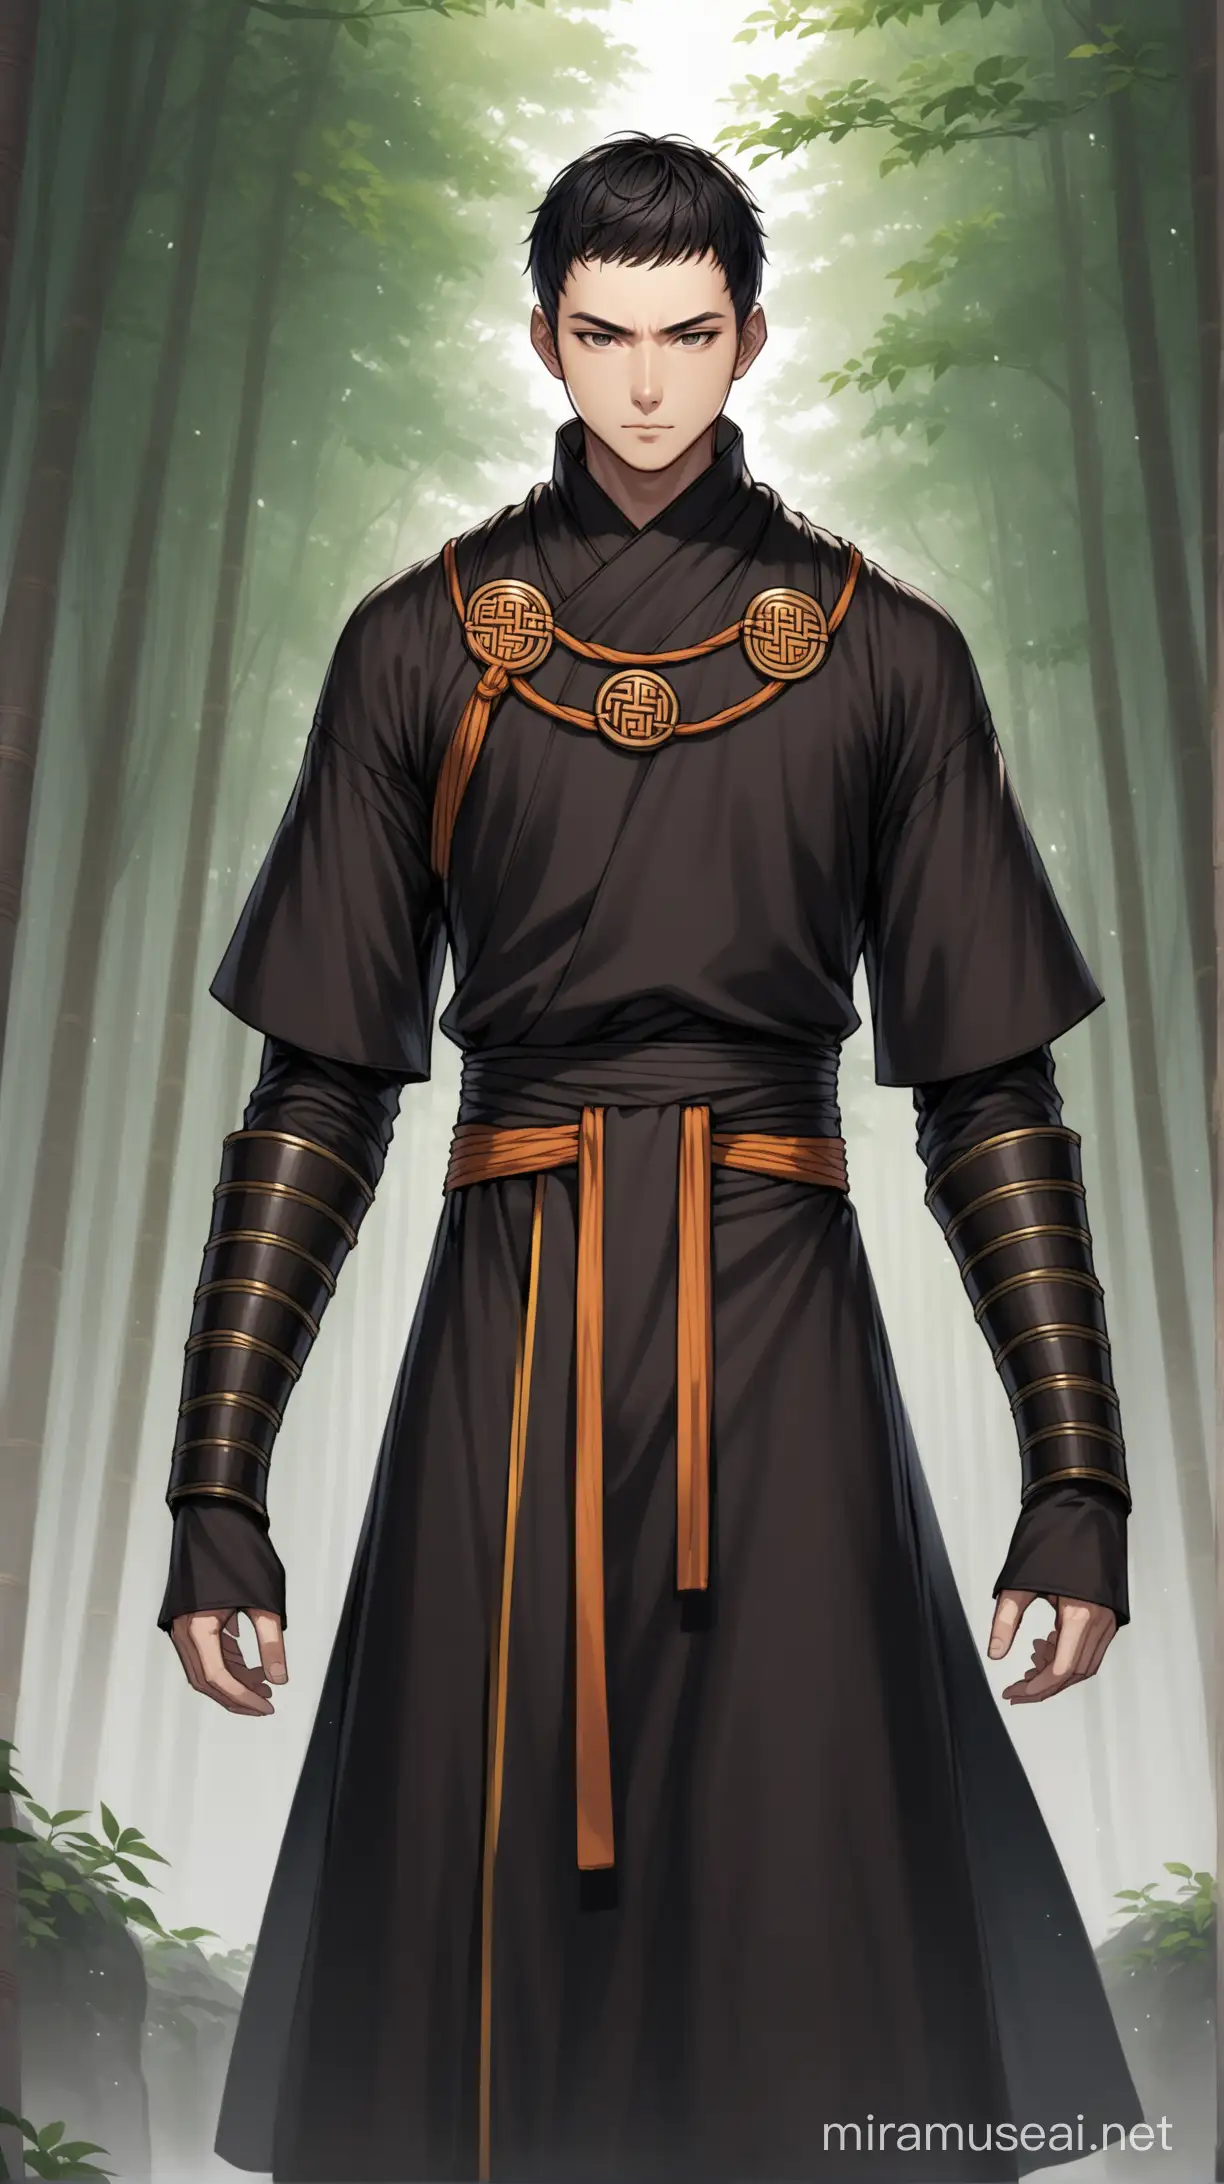 DarkHaired Male Warrior Monk in Black Robes